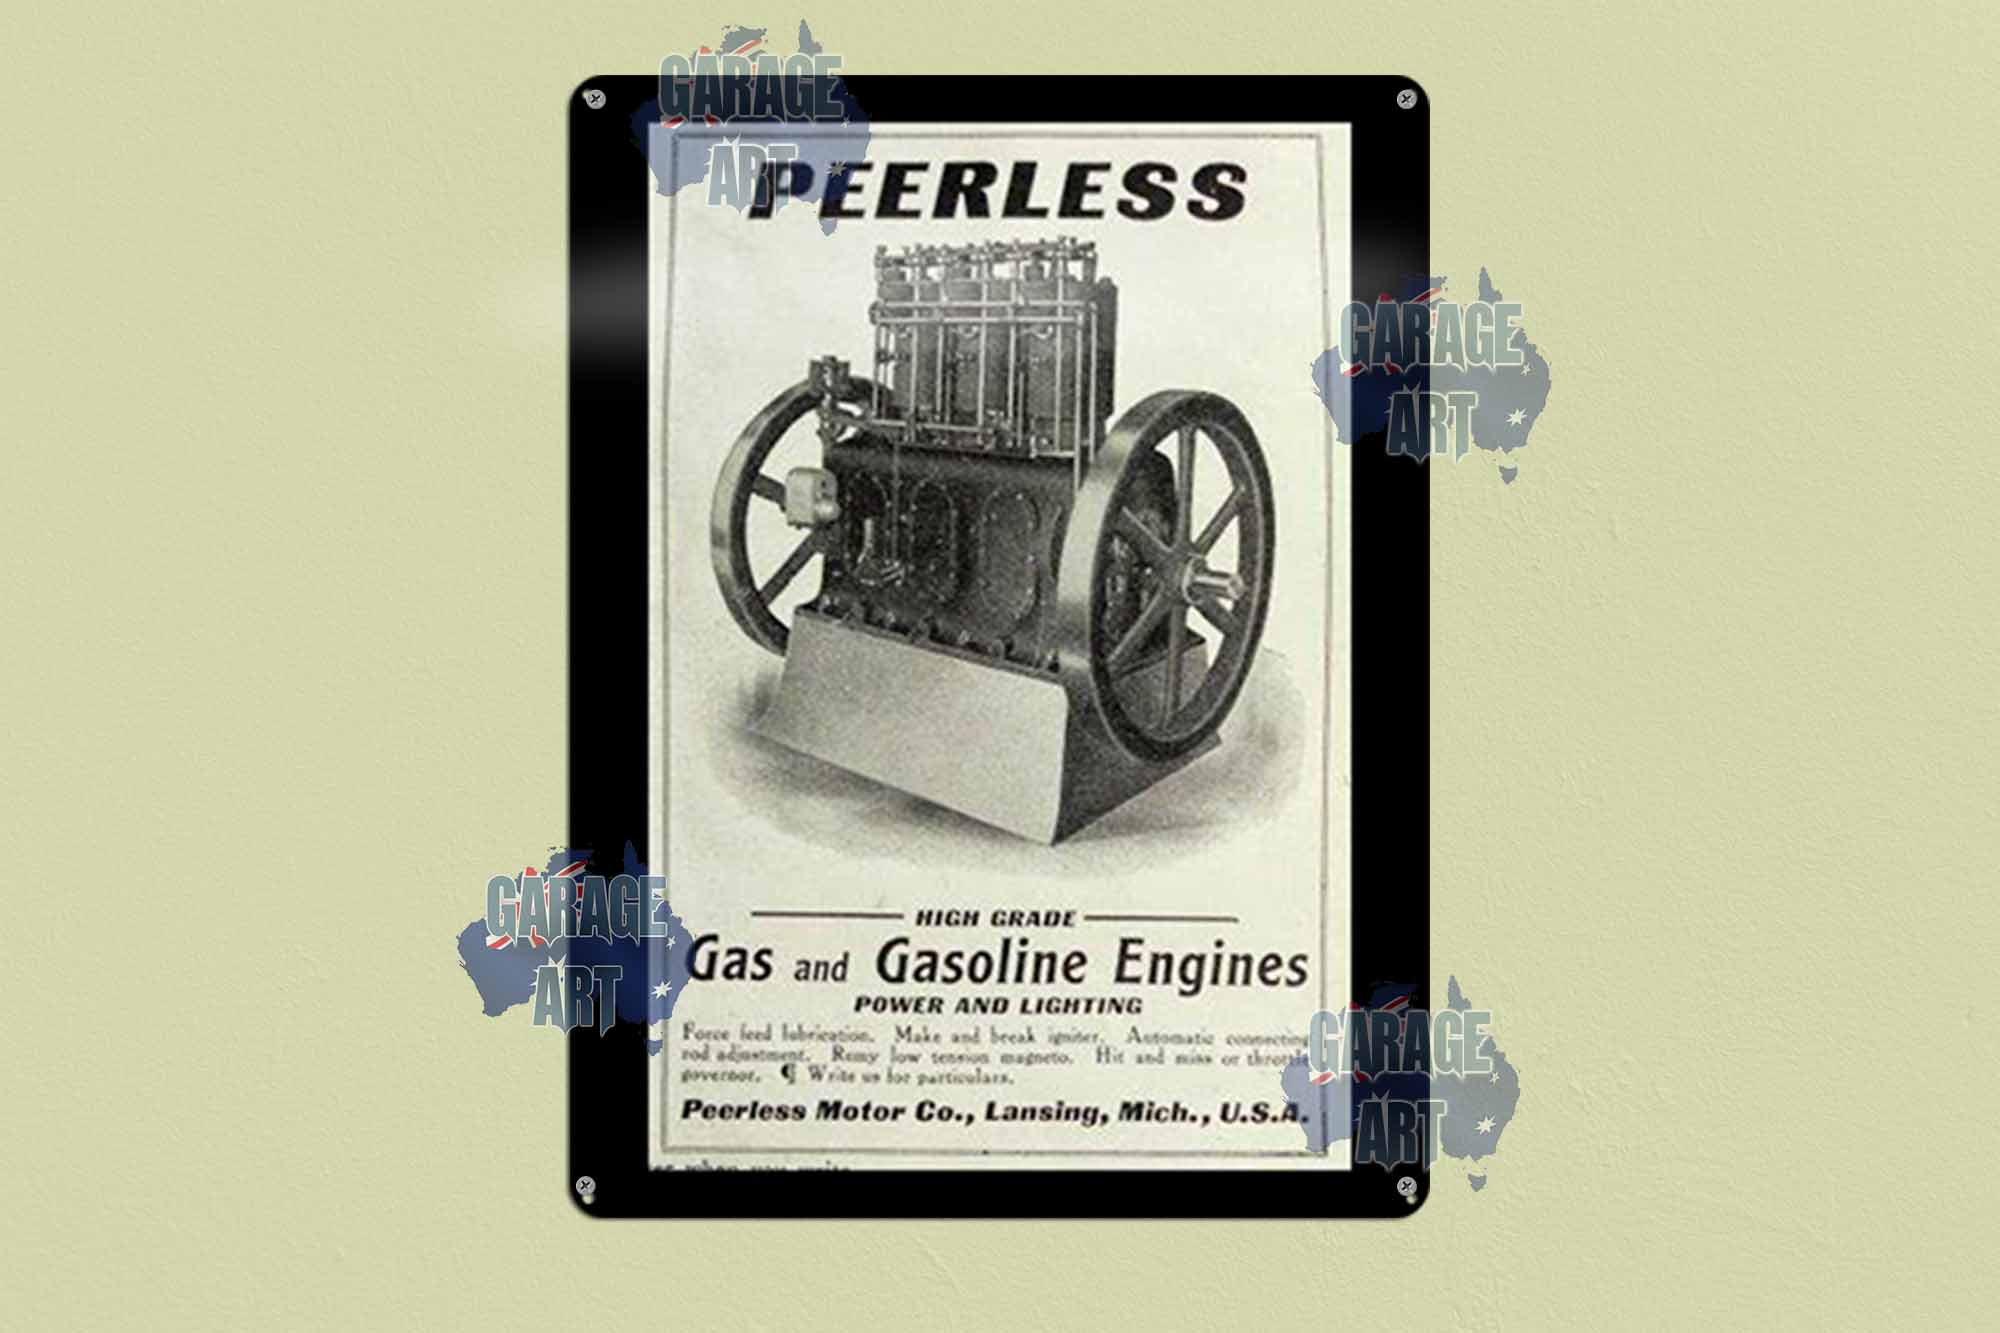 Peerless Tin Sign freeshipping - garageartaustralia